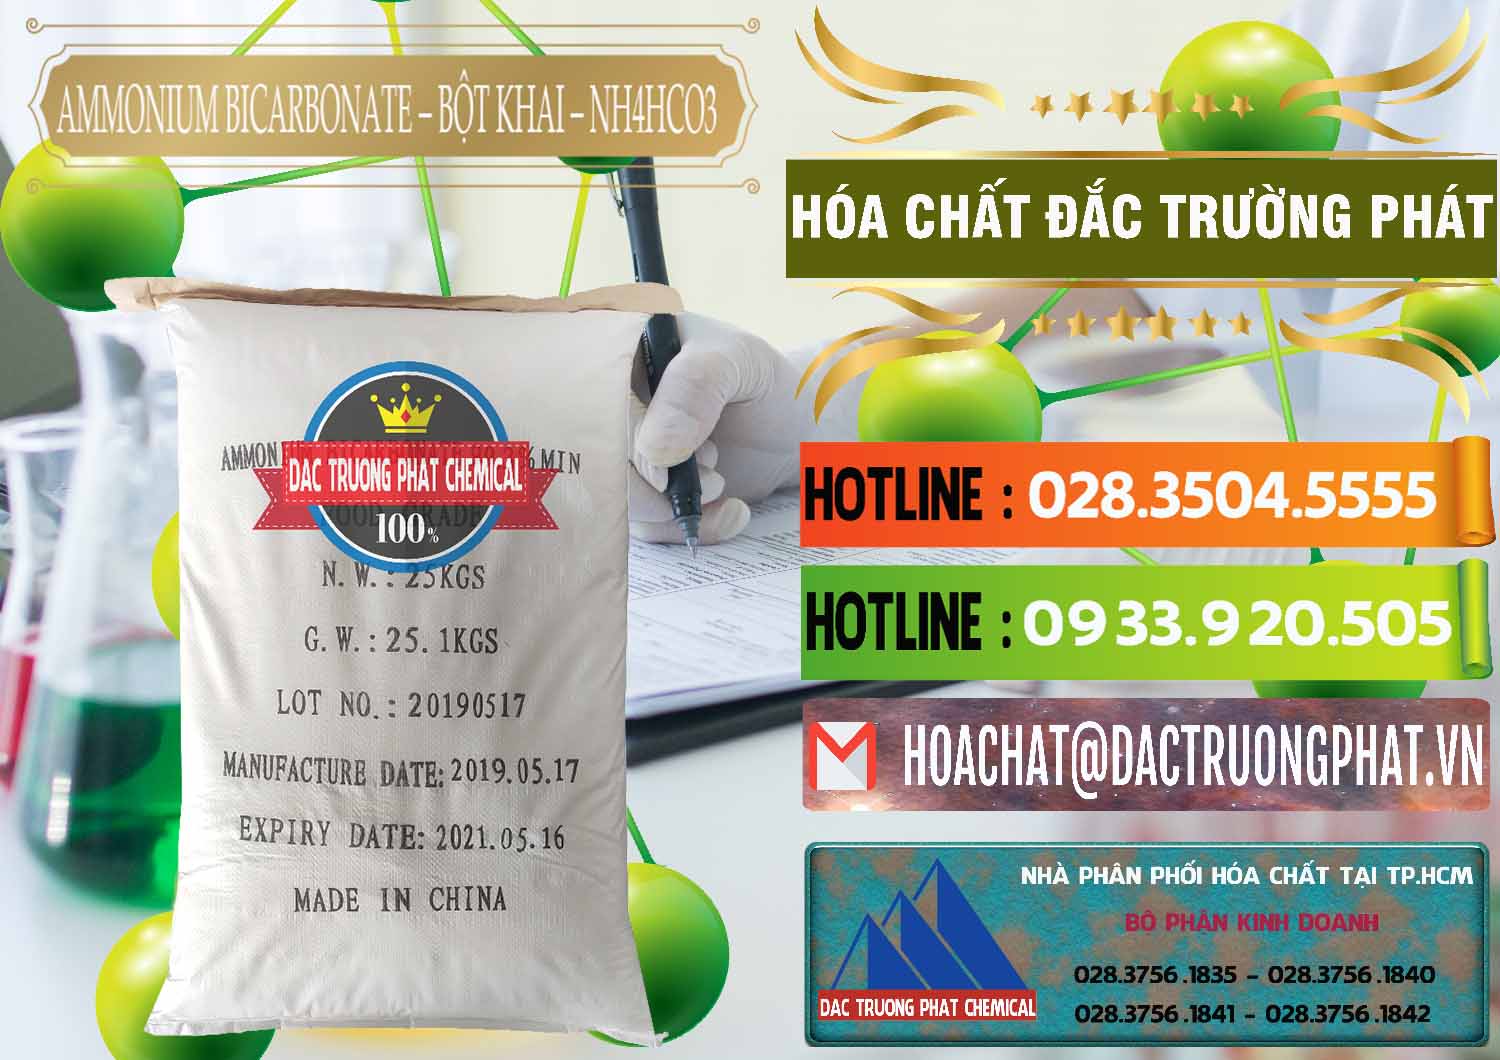 Bán Ammonium Bicarbonate - Bột Khai Food Grade Trung Quốc China - 0018 - Nơi chuyên kinh doanh & phân phối hóa chất tại TP.HCM - cungcaphoachat.com.vn